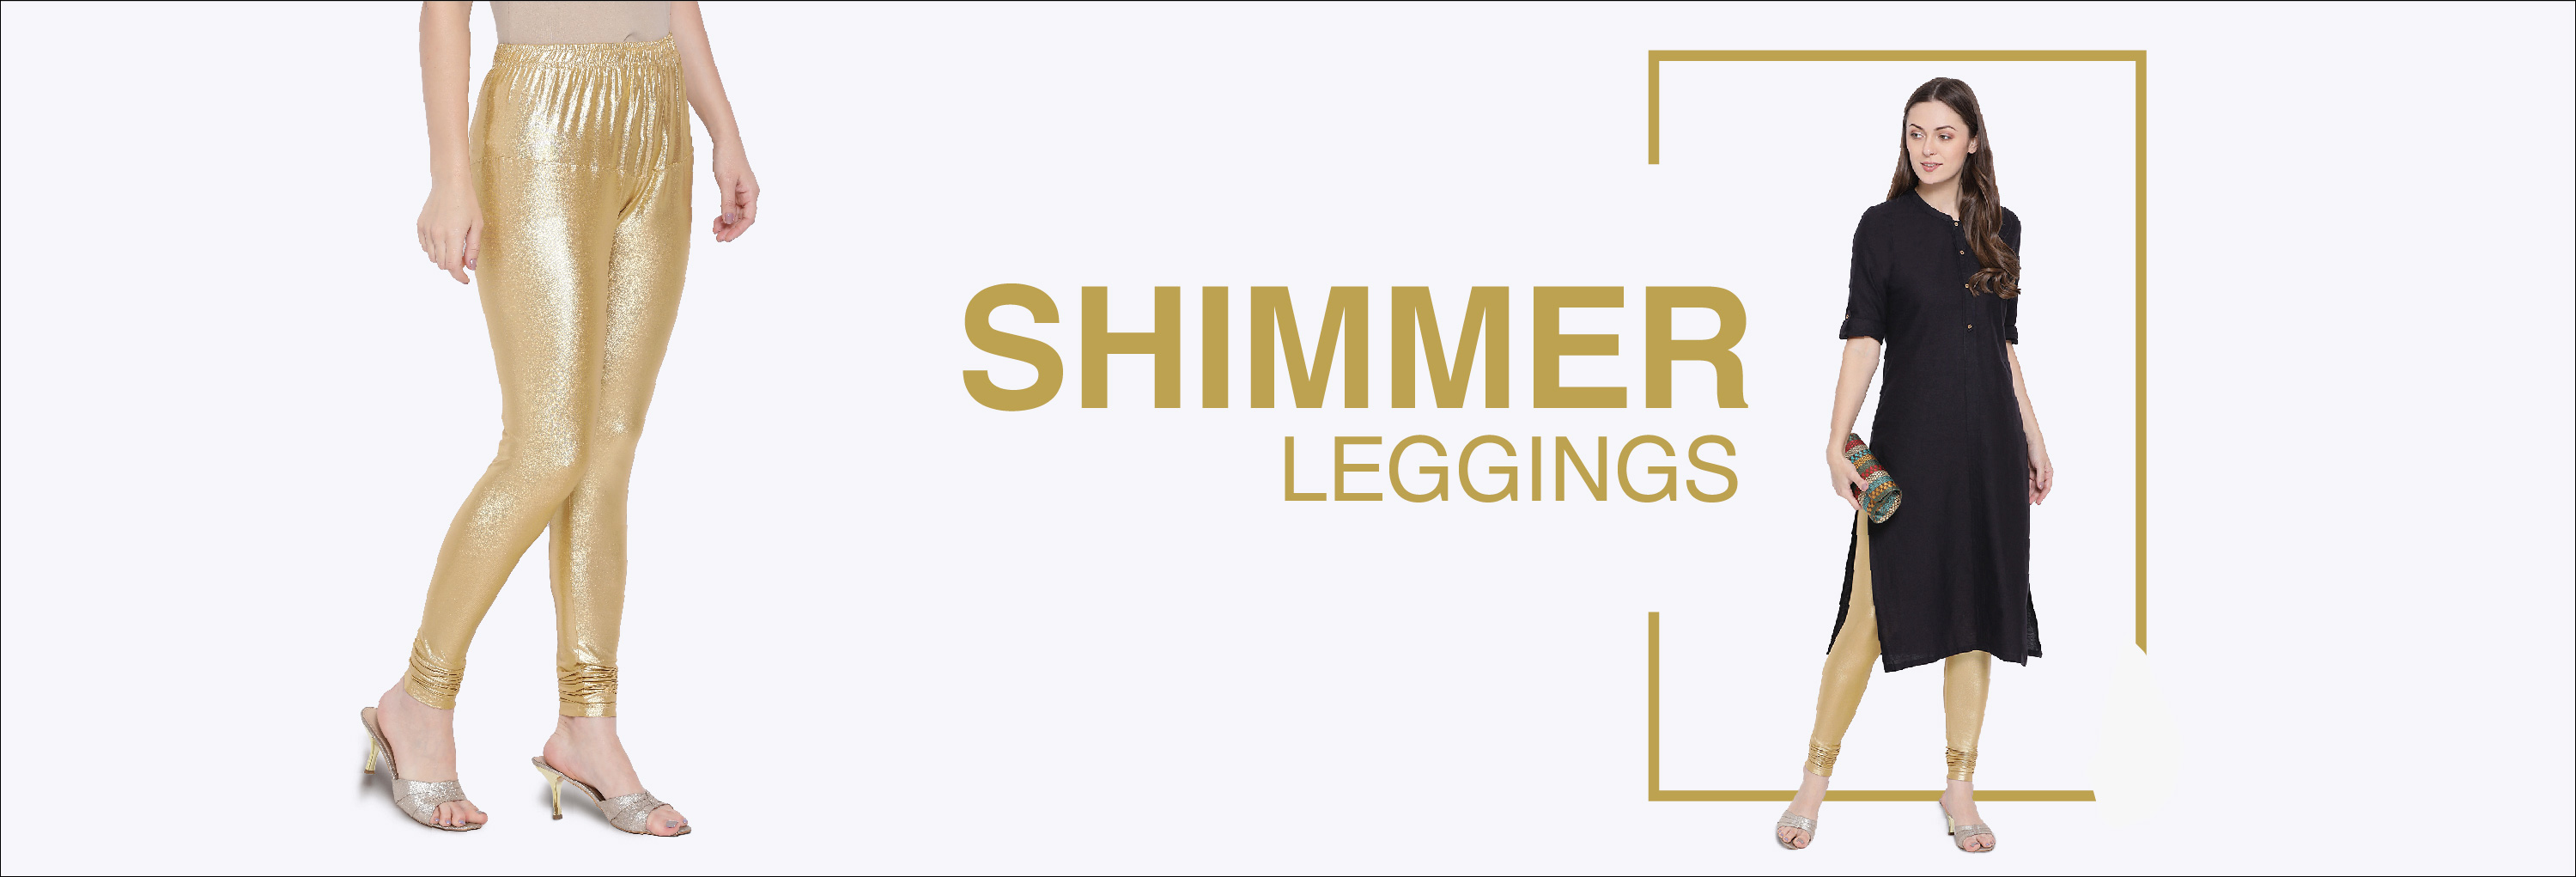 Shimmer Leggings - Buy Shimmer Leggings online at Best Prices in